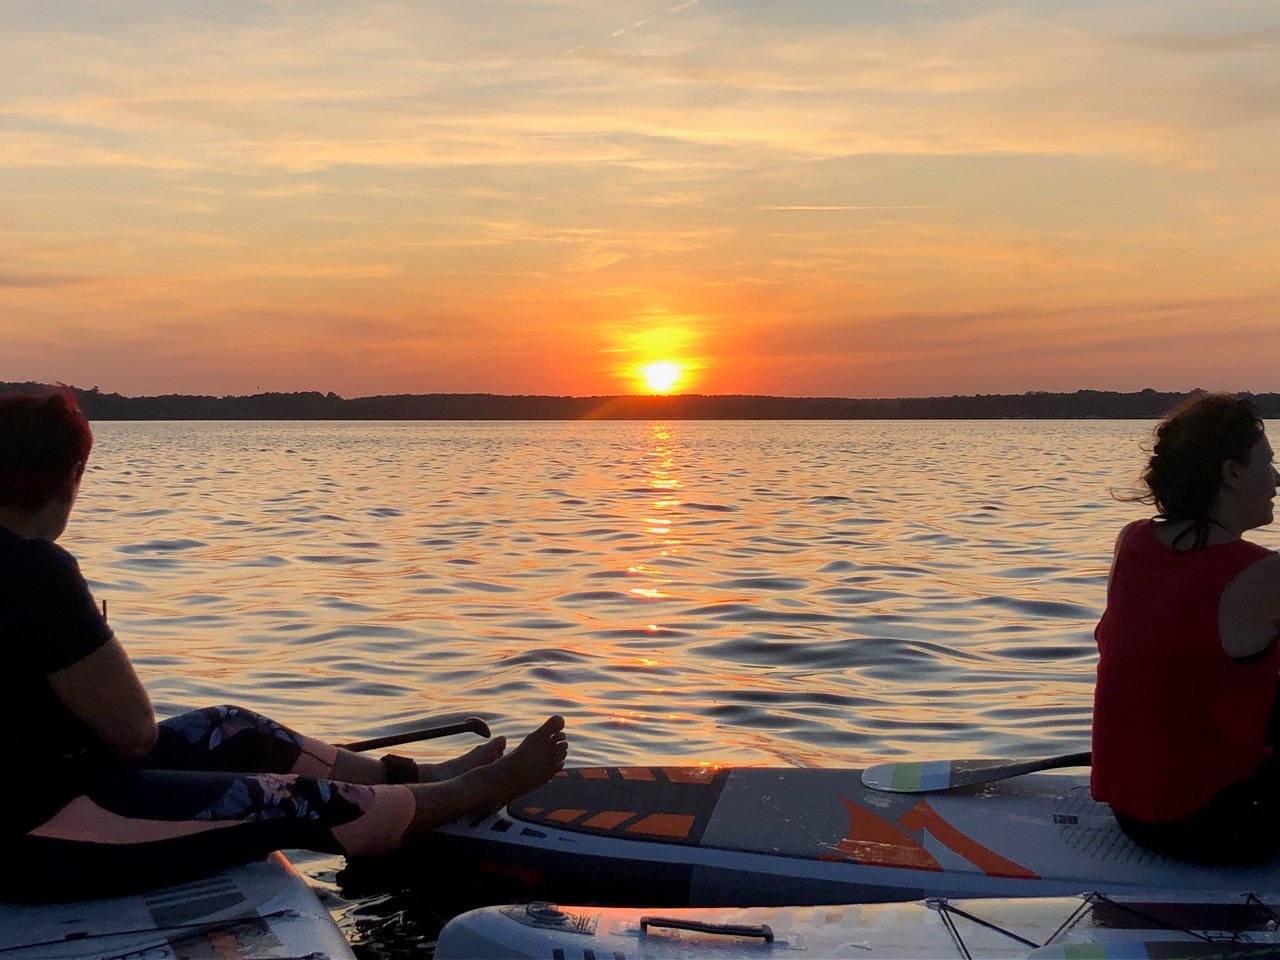 Frauen sitzen auf Stand-Up-Paddle-Boards und beobachten einen Sonnenuntergang.